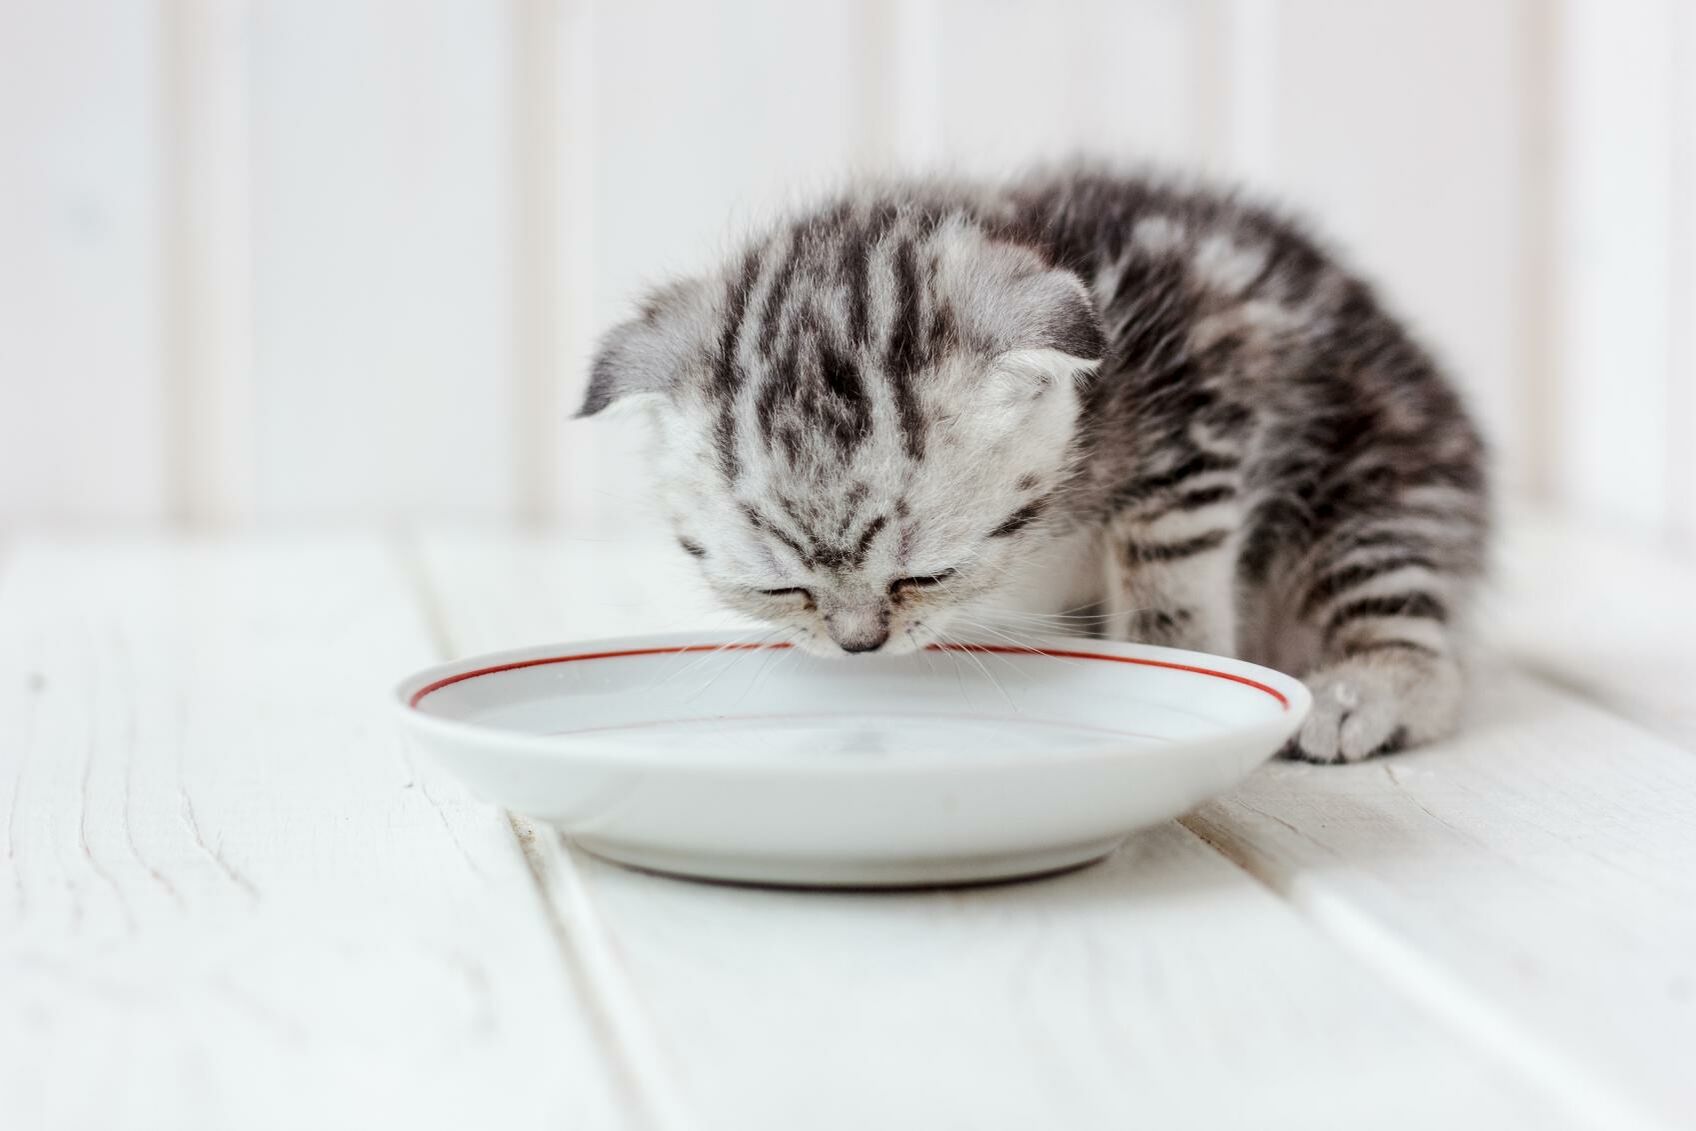 Ein Katzenbaby schaut auf einem Teller vor sich.